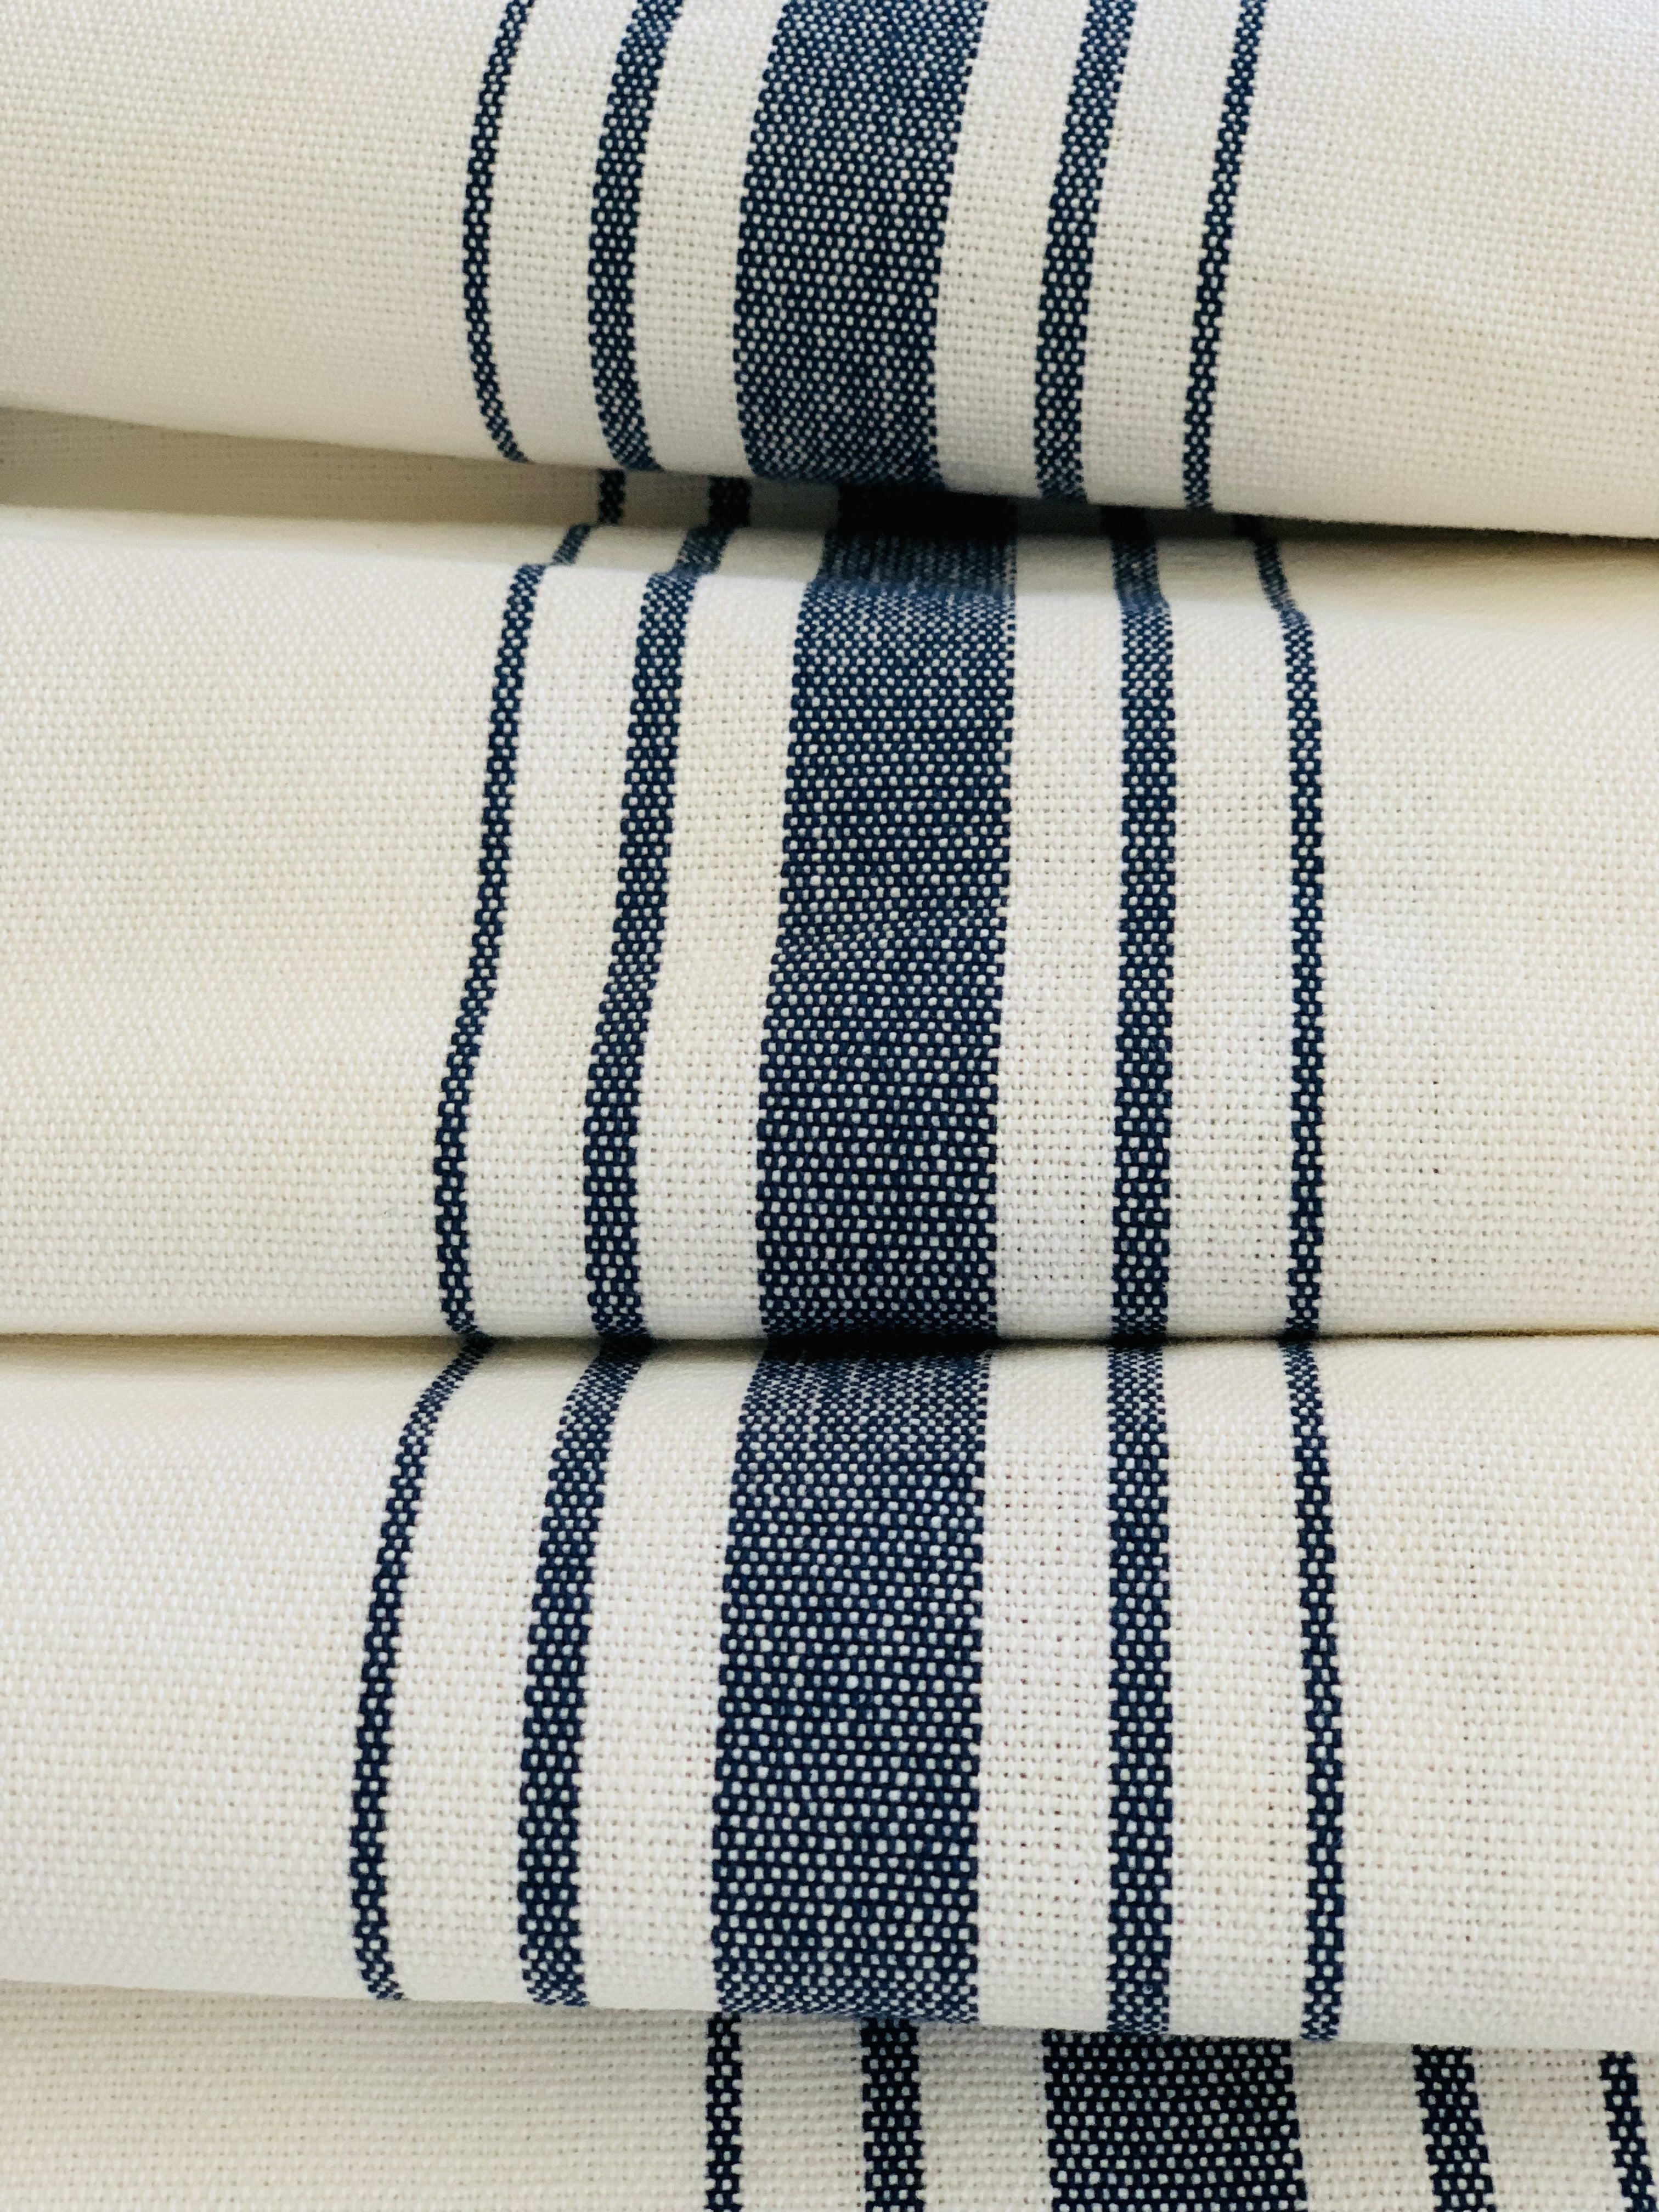 Navy on White - Farmhouse Stripe Fabric